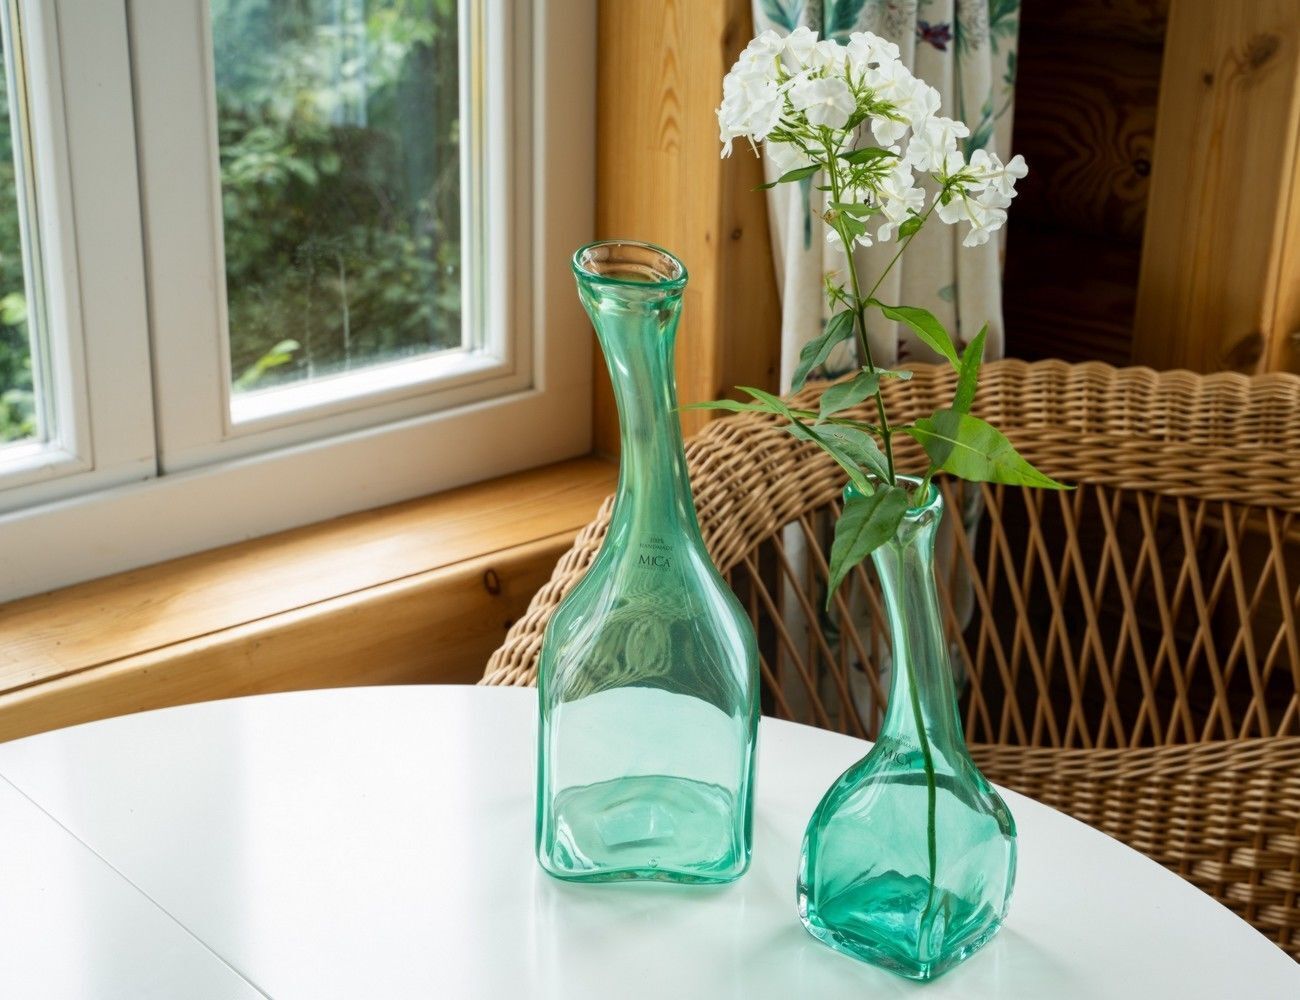 Як повернути блиск скляному посуду: п'ять простих способів